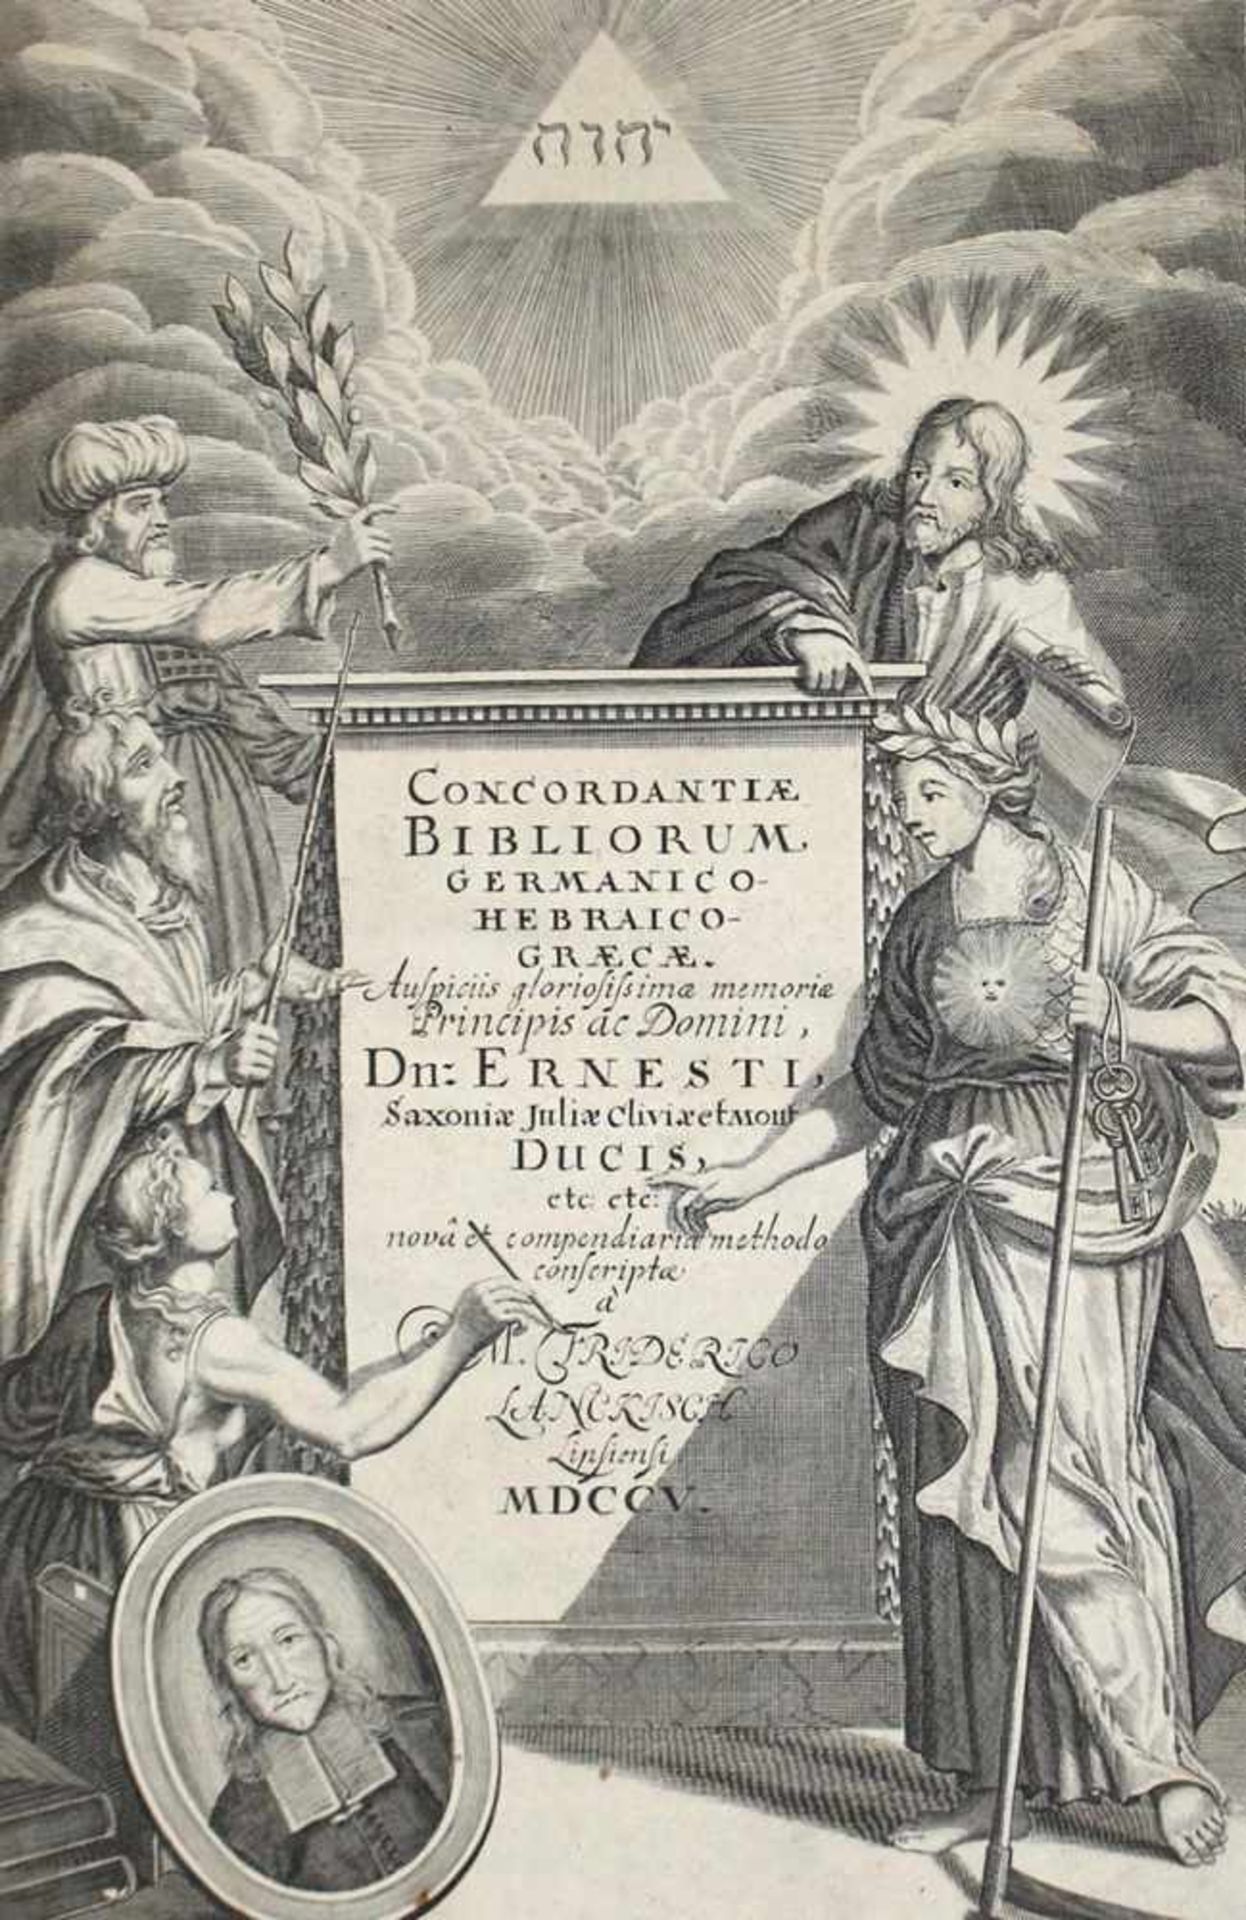 Lanckisch,F.Lanckisch,F. Concordantiae bibliorum Germanico-Hebraico-Graecae. 4. verm. uLanc